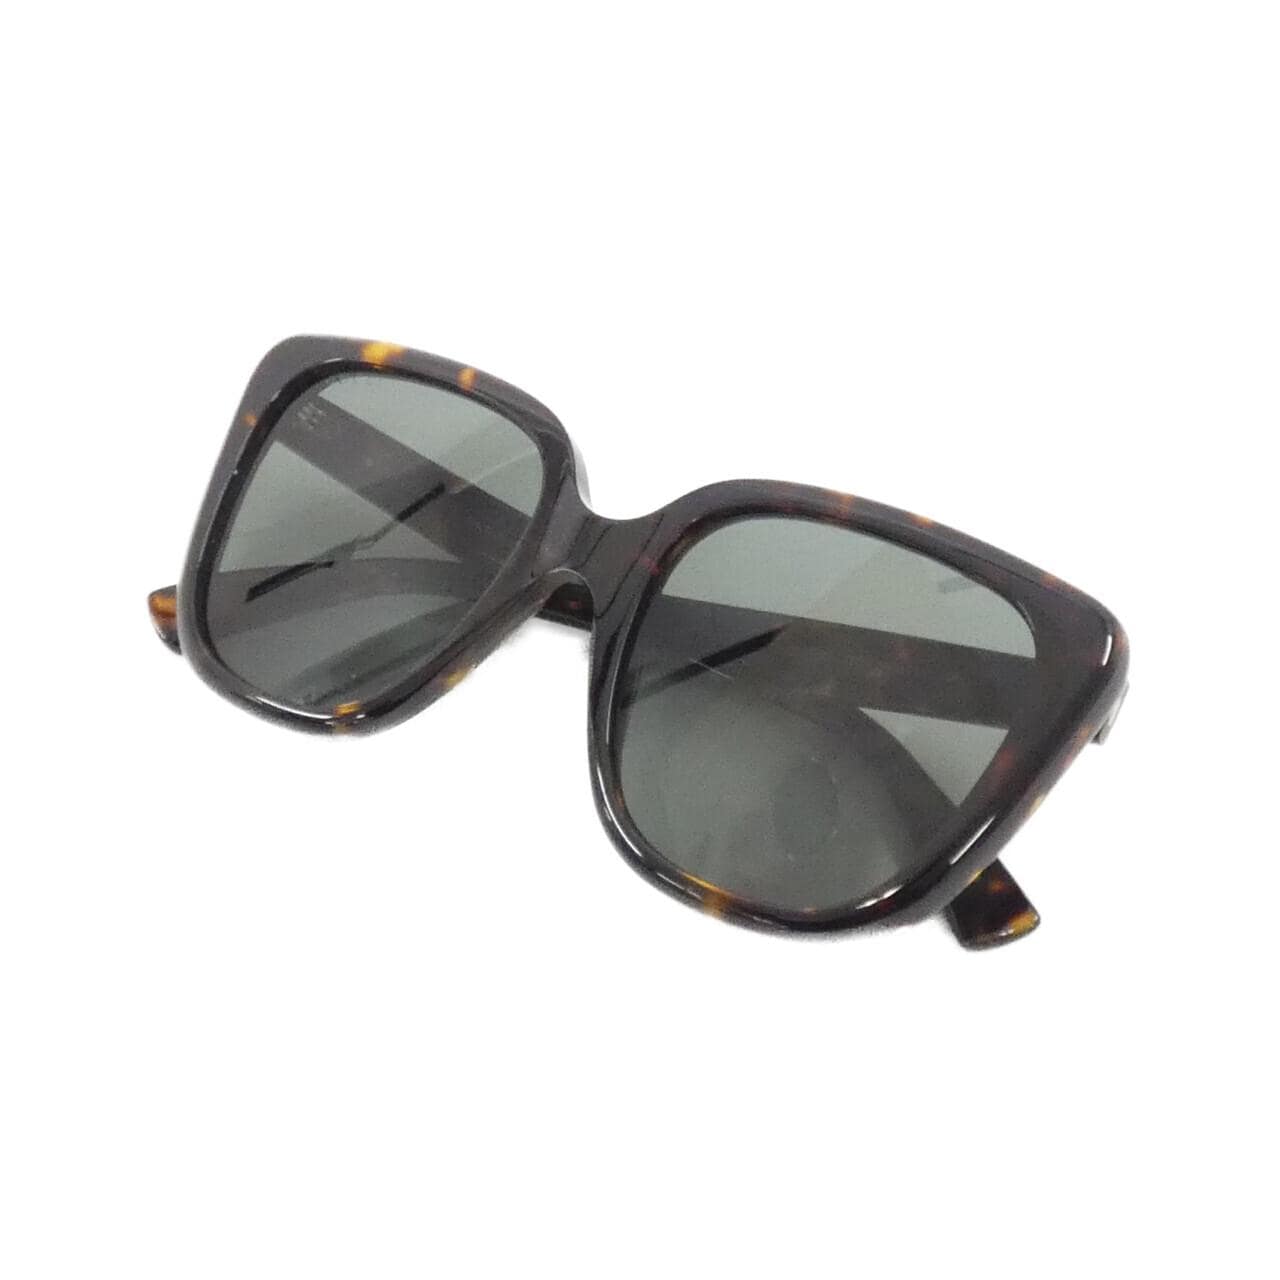 [BRAND NEW] Gucci 1169S Sunglasses